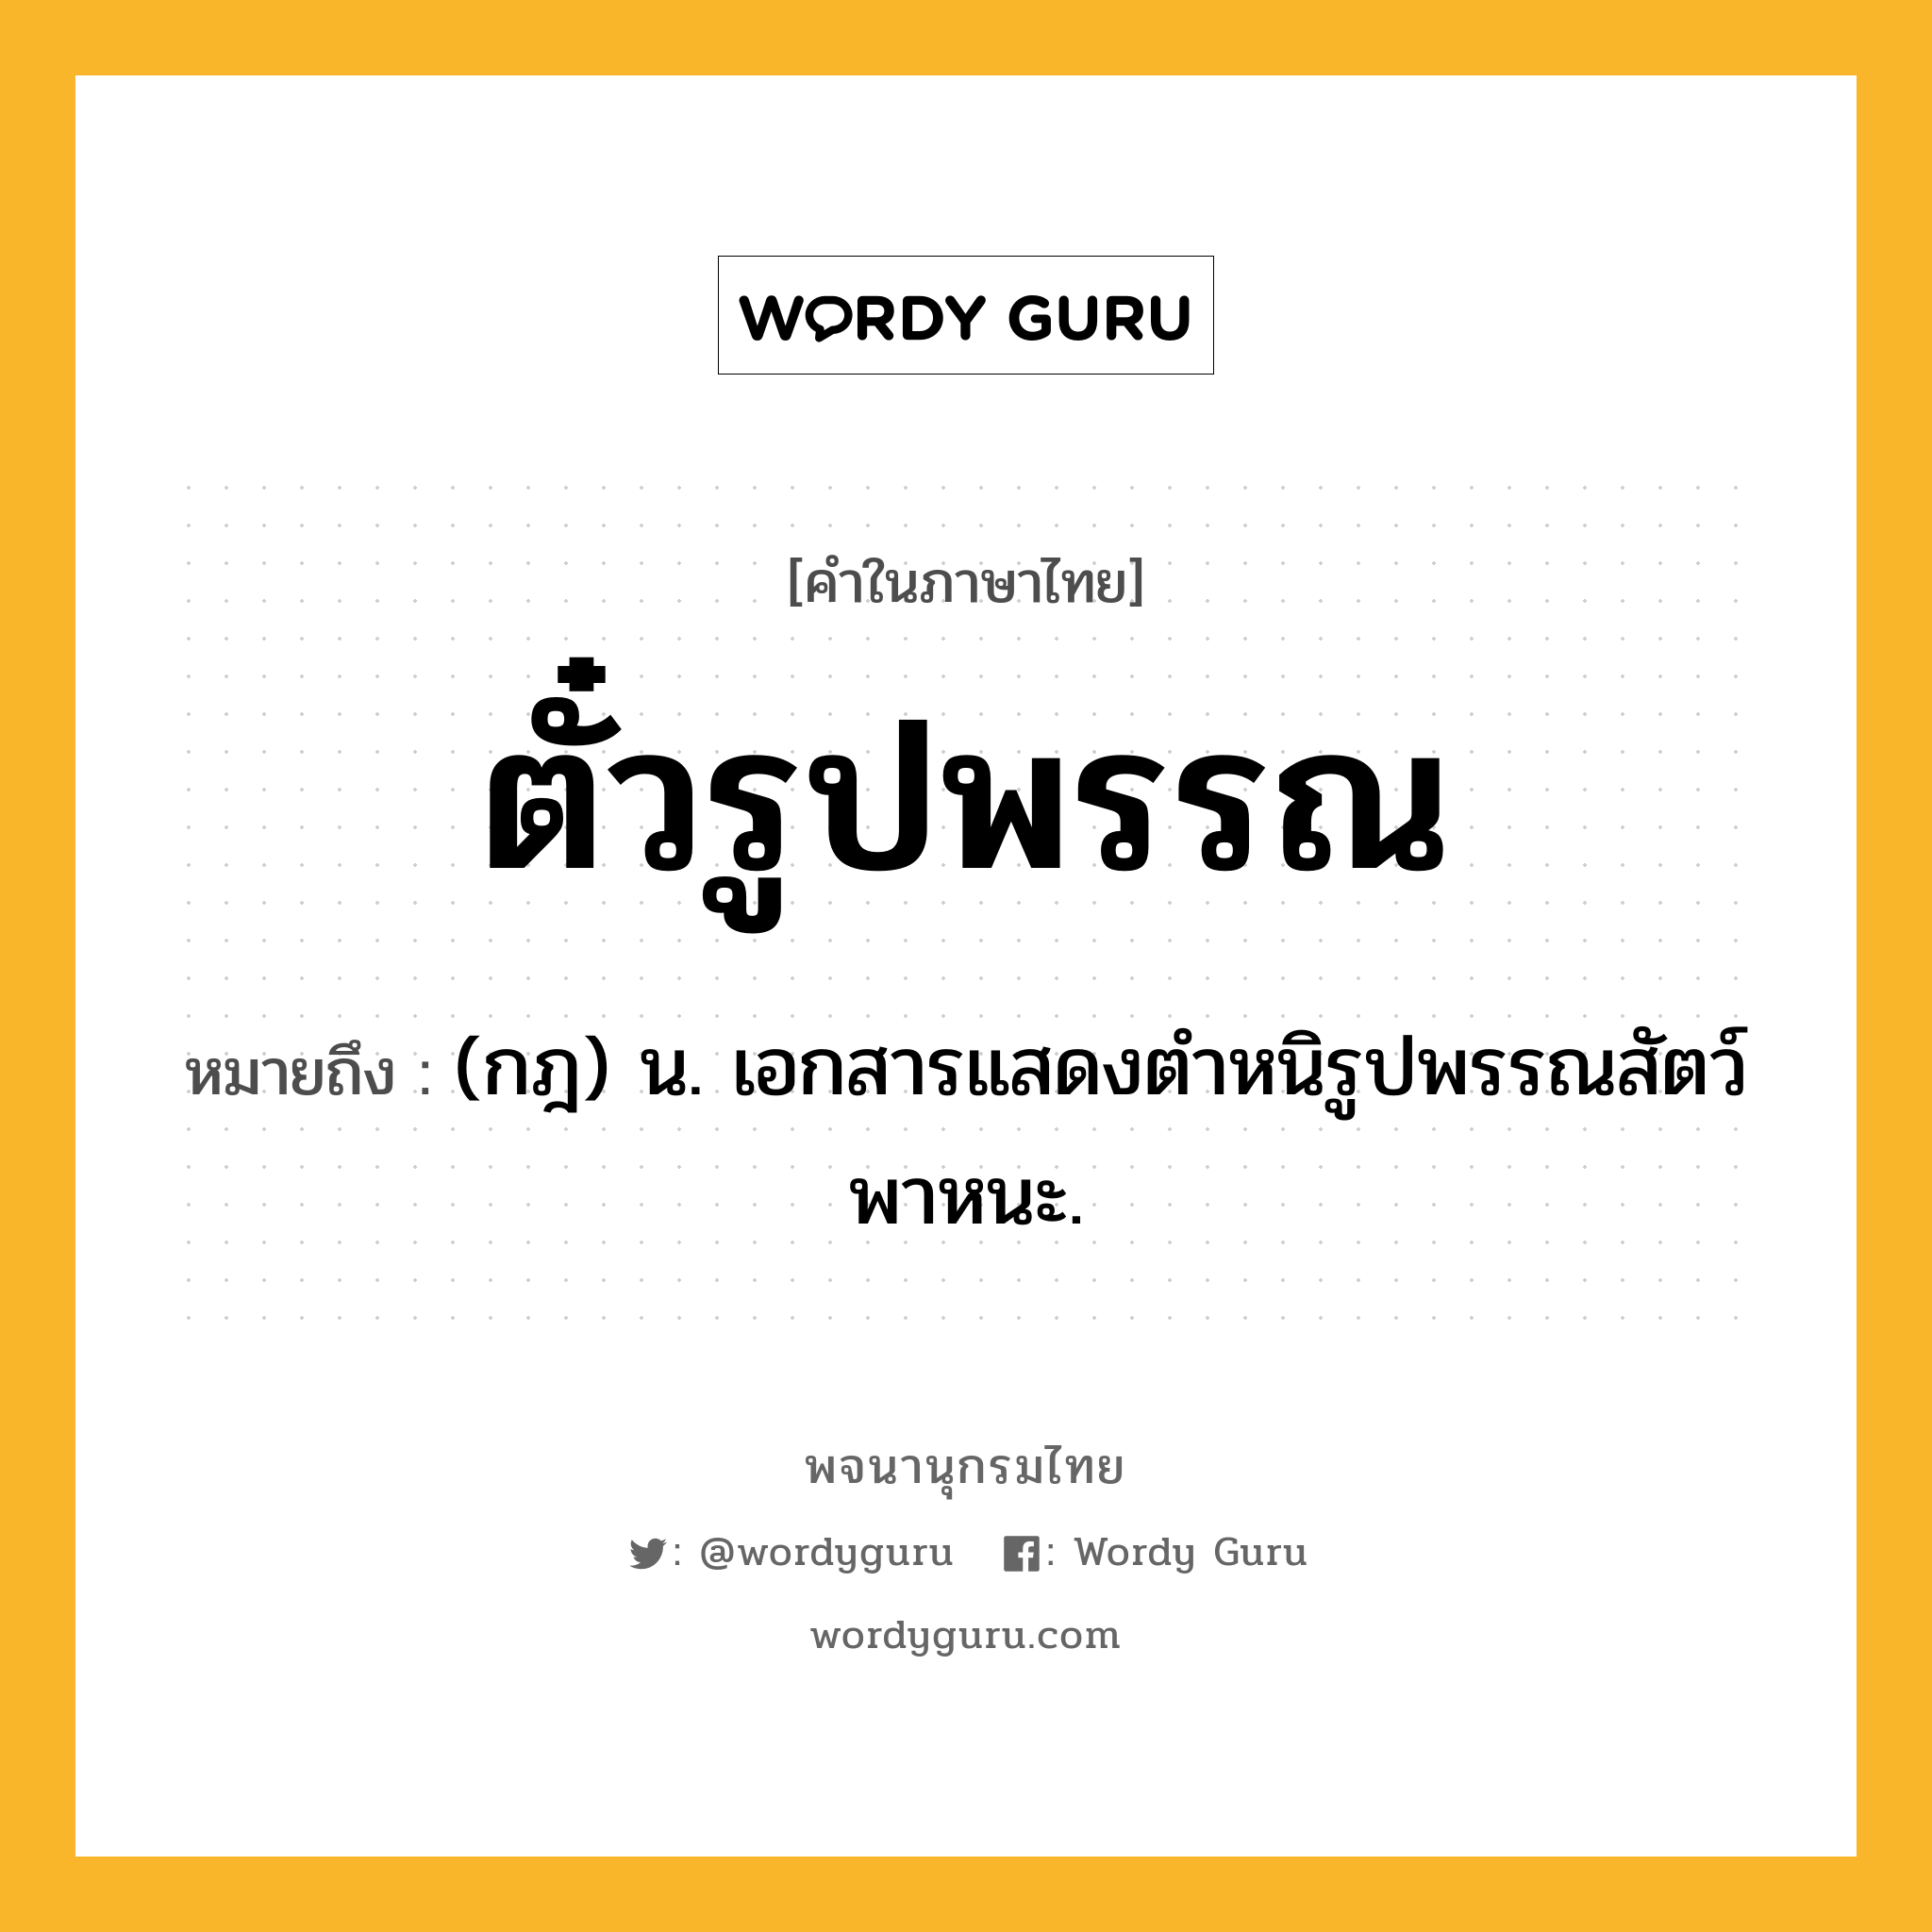 ตั๋วรูปพรรณ ความหมาย หมายถึงอะไร?, คำในภาษาไทย ตั๋วรูปพรรณ หมายถึง (กฎ) น. เอกสารแสดงตำหนิรูปพรรณสัตว์พาหนะ.